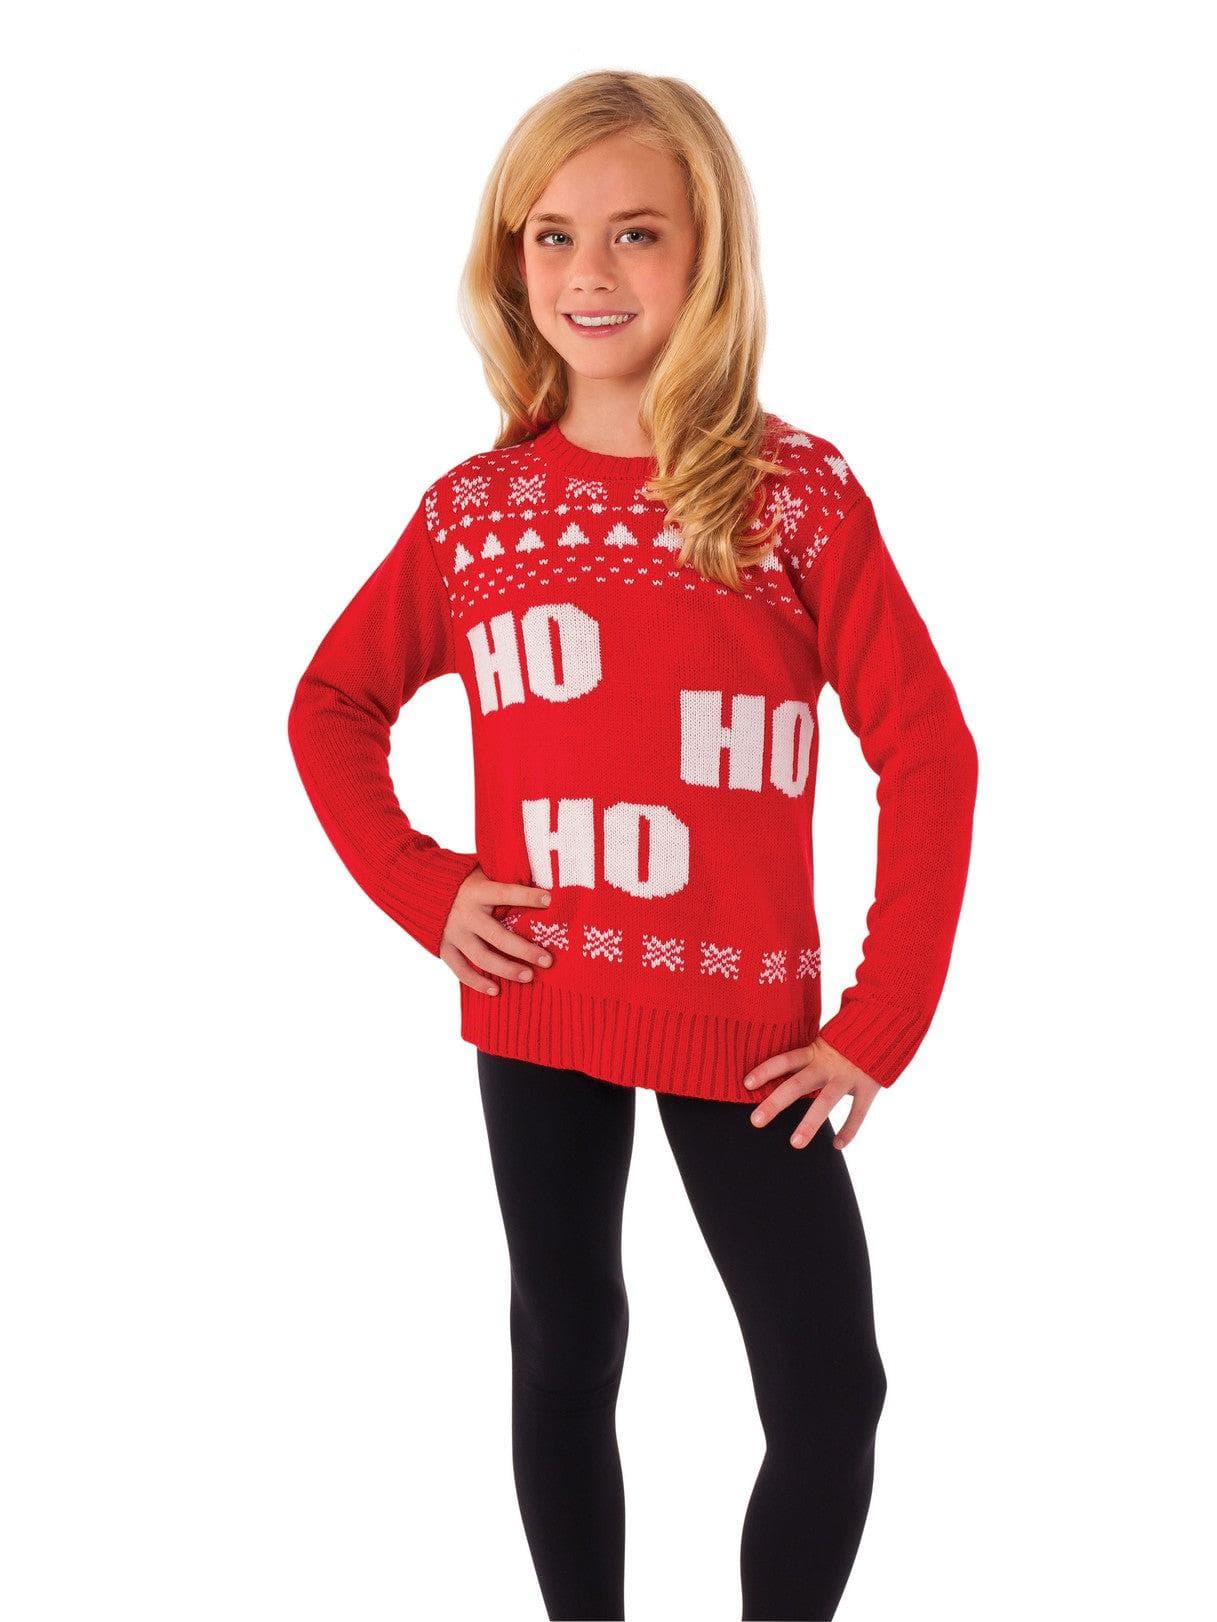 Kids Ho Ho Ho Sweater - costumes.com